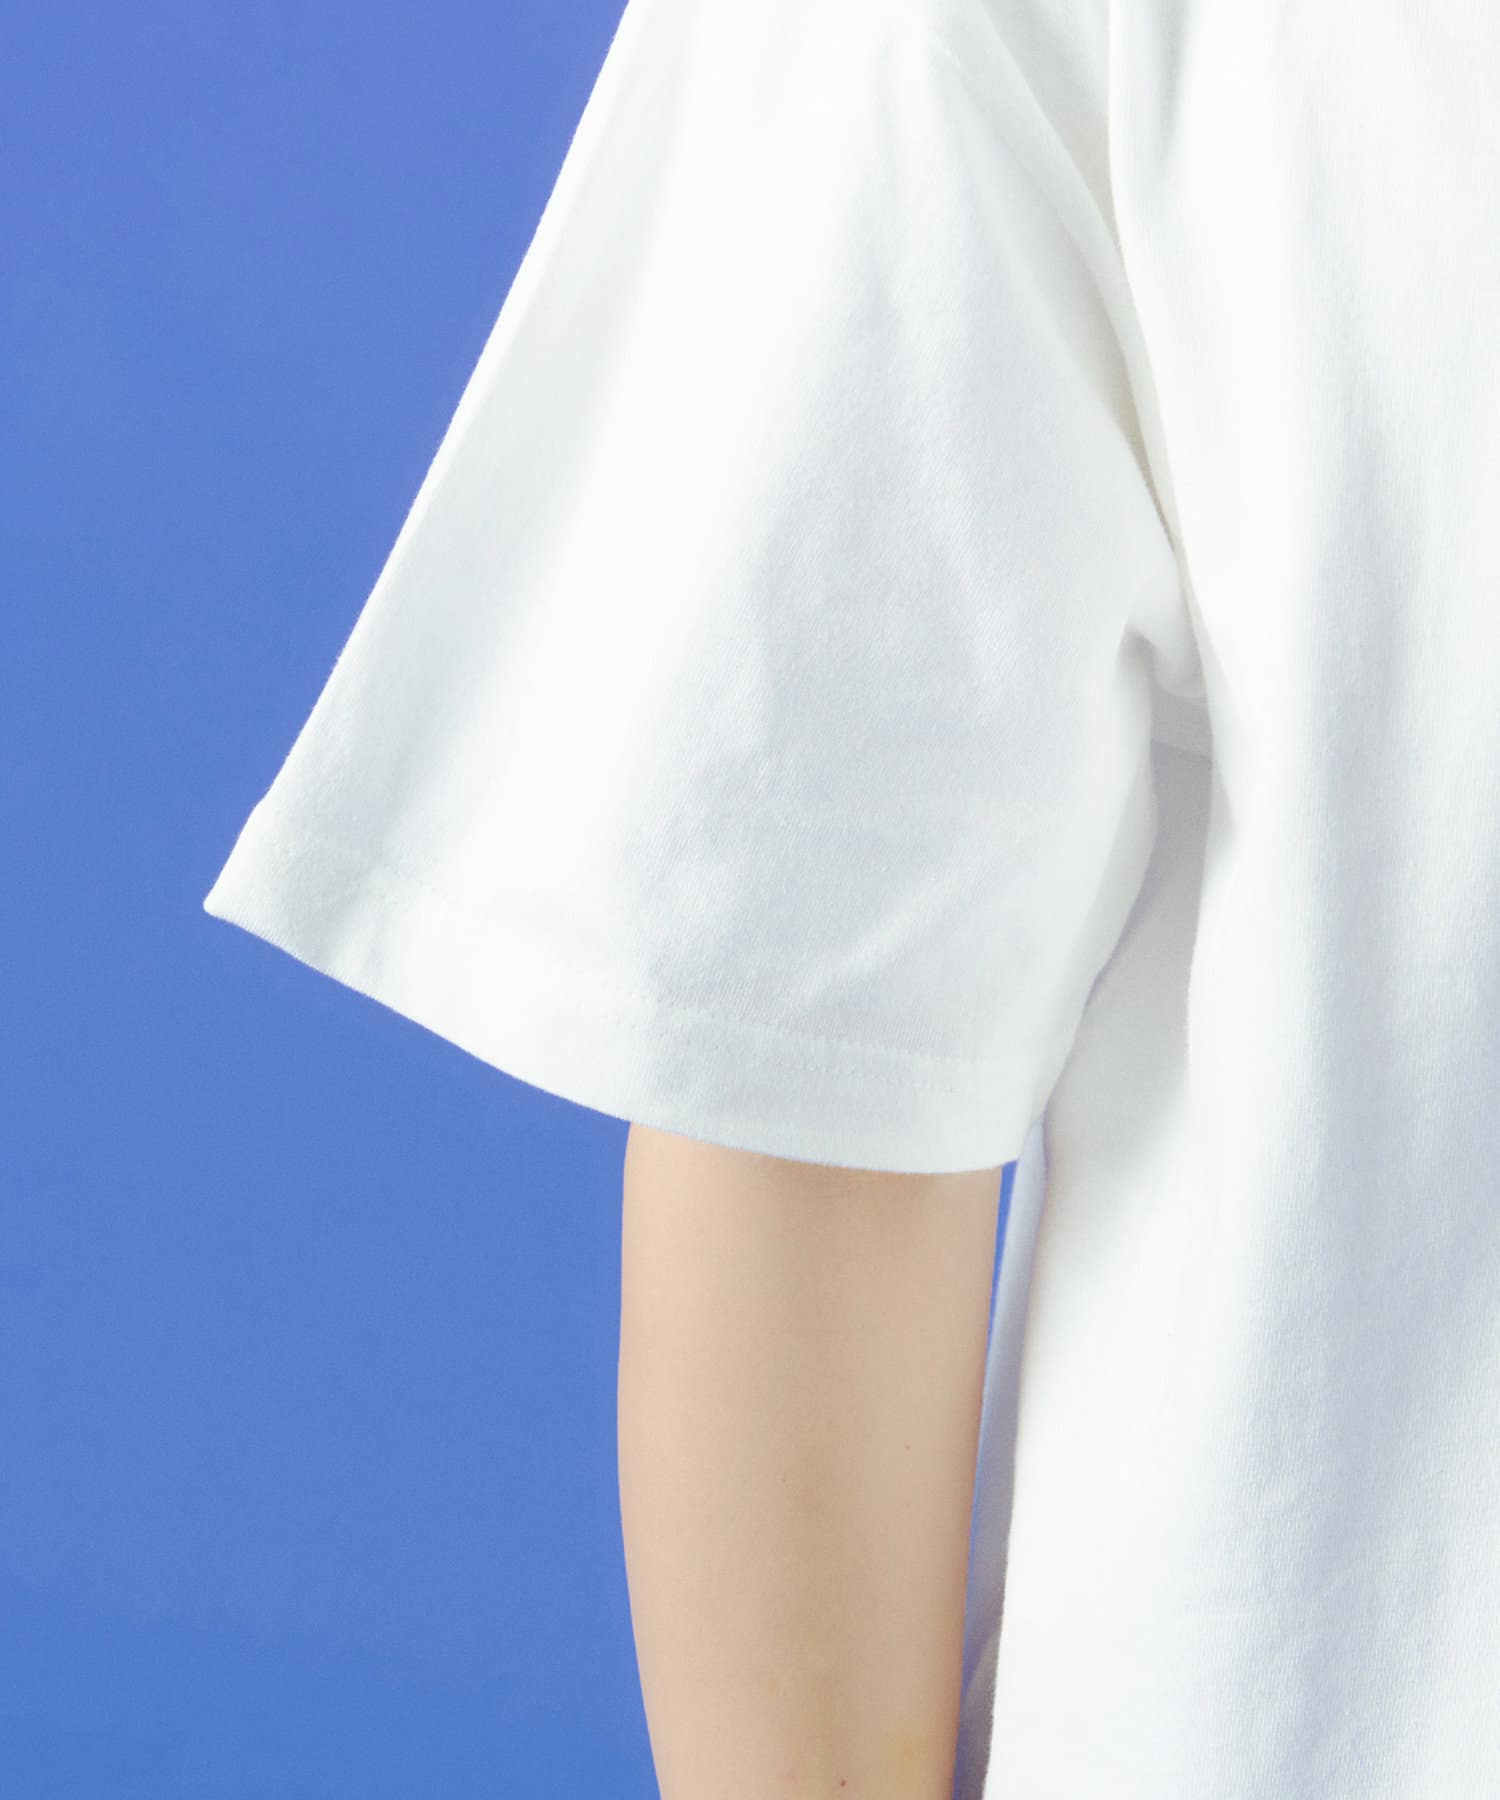 POKEUNI(ポケユニ) UniversalグローブロゴTシャツ：Lサイズ